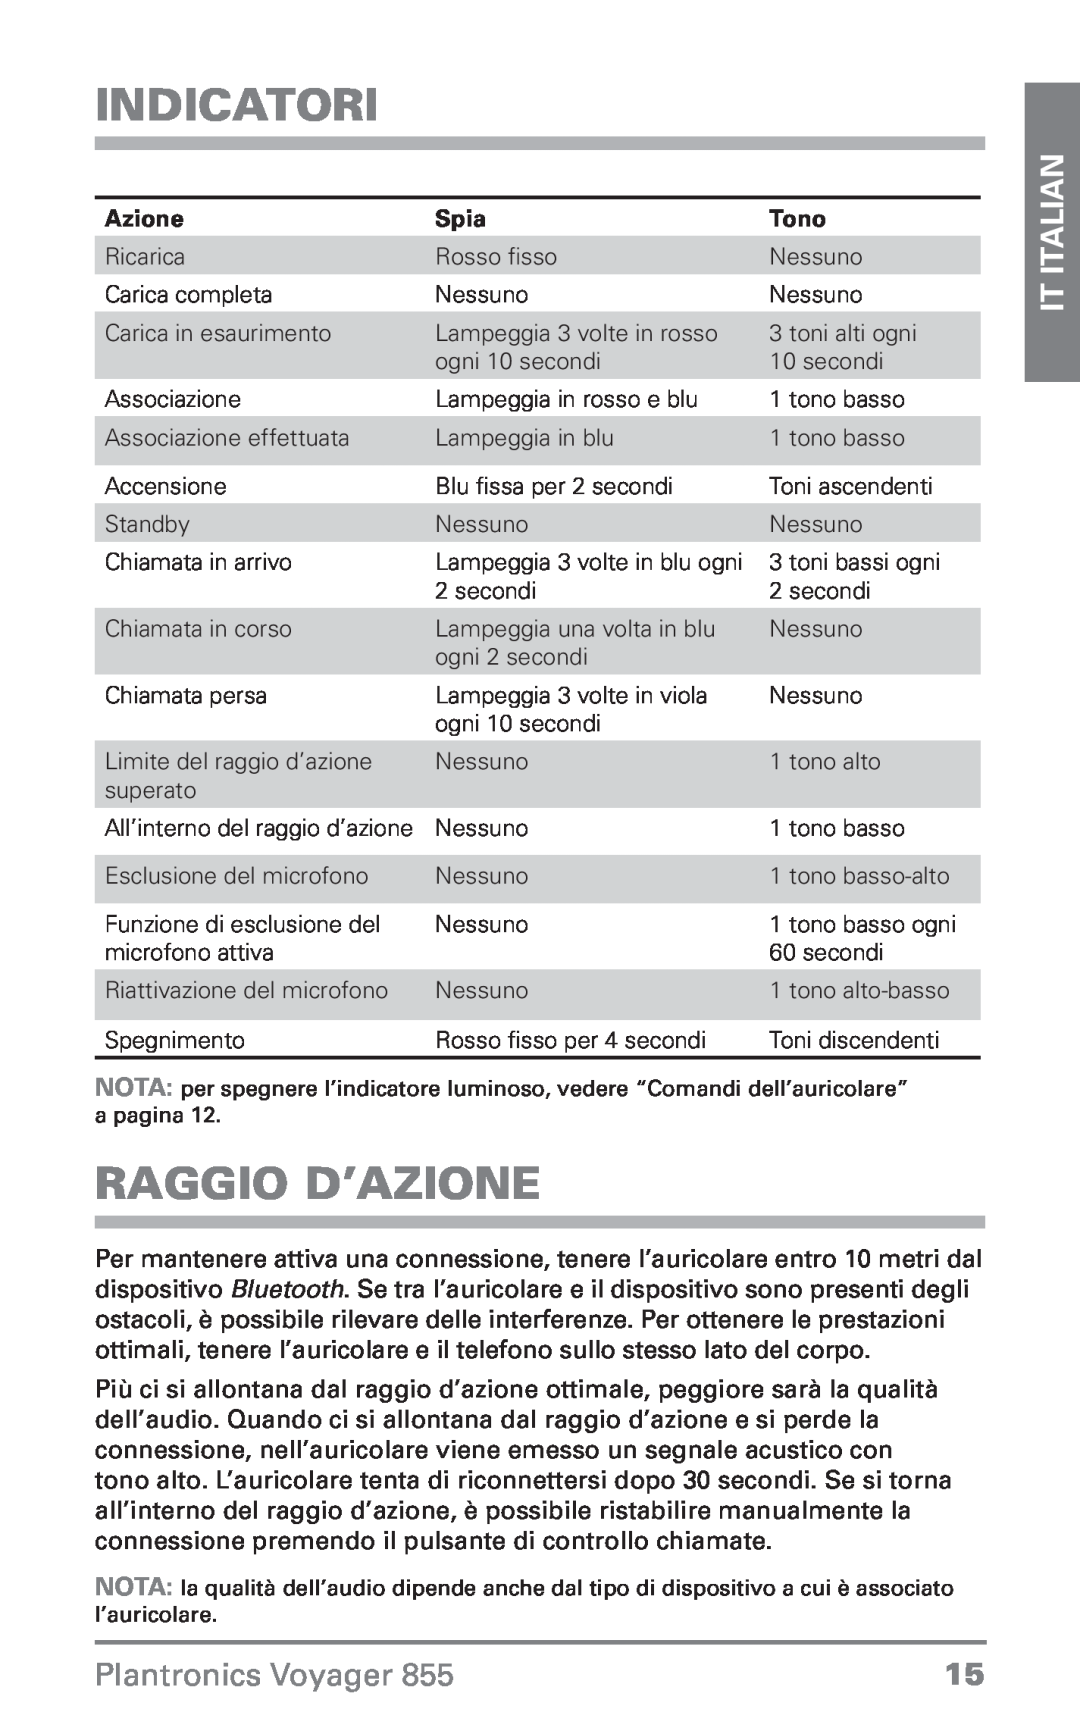 Plantronics Voyager 855 Indicatori, Raggio d’azione, IT Italian, Plantronics Voyager, Azione, Spia, Tono 